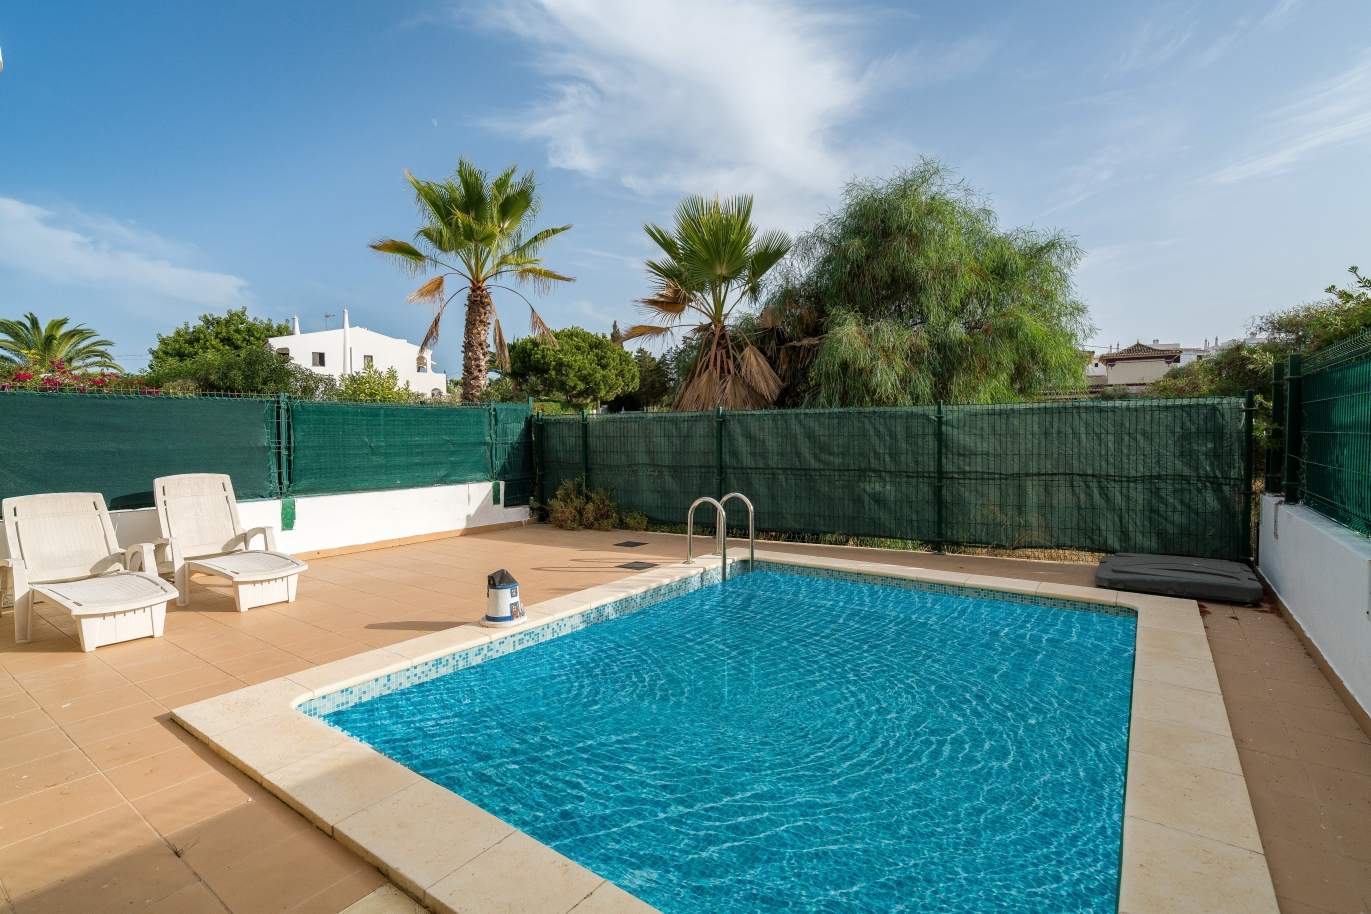 Moradia V2, com piscina, para venda, Carvoeiro, Algarve_149486